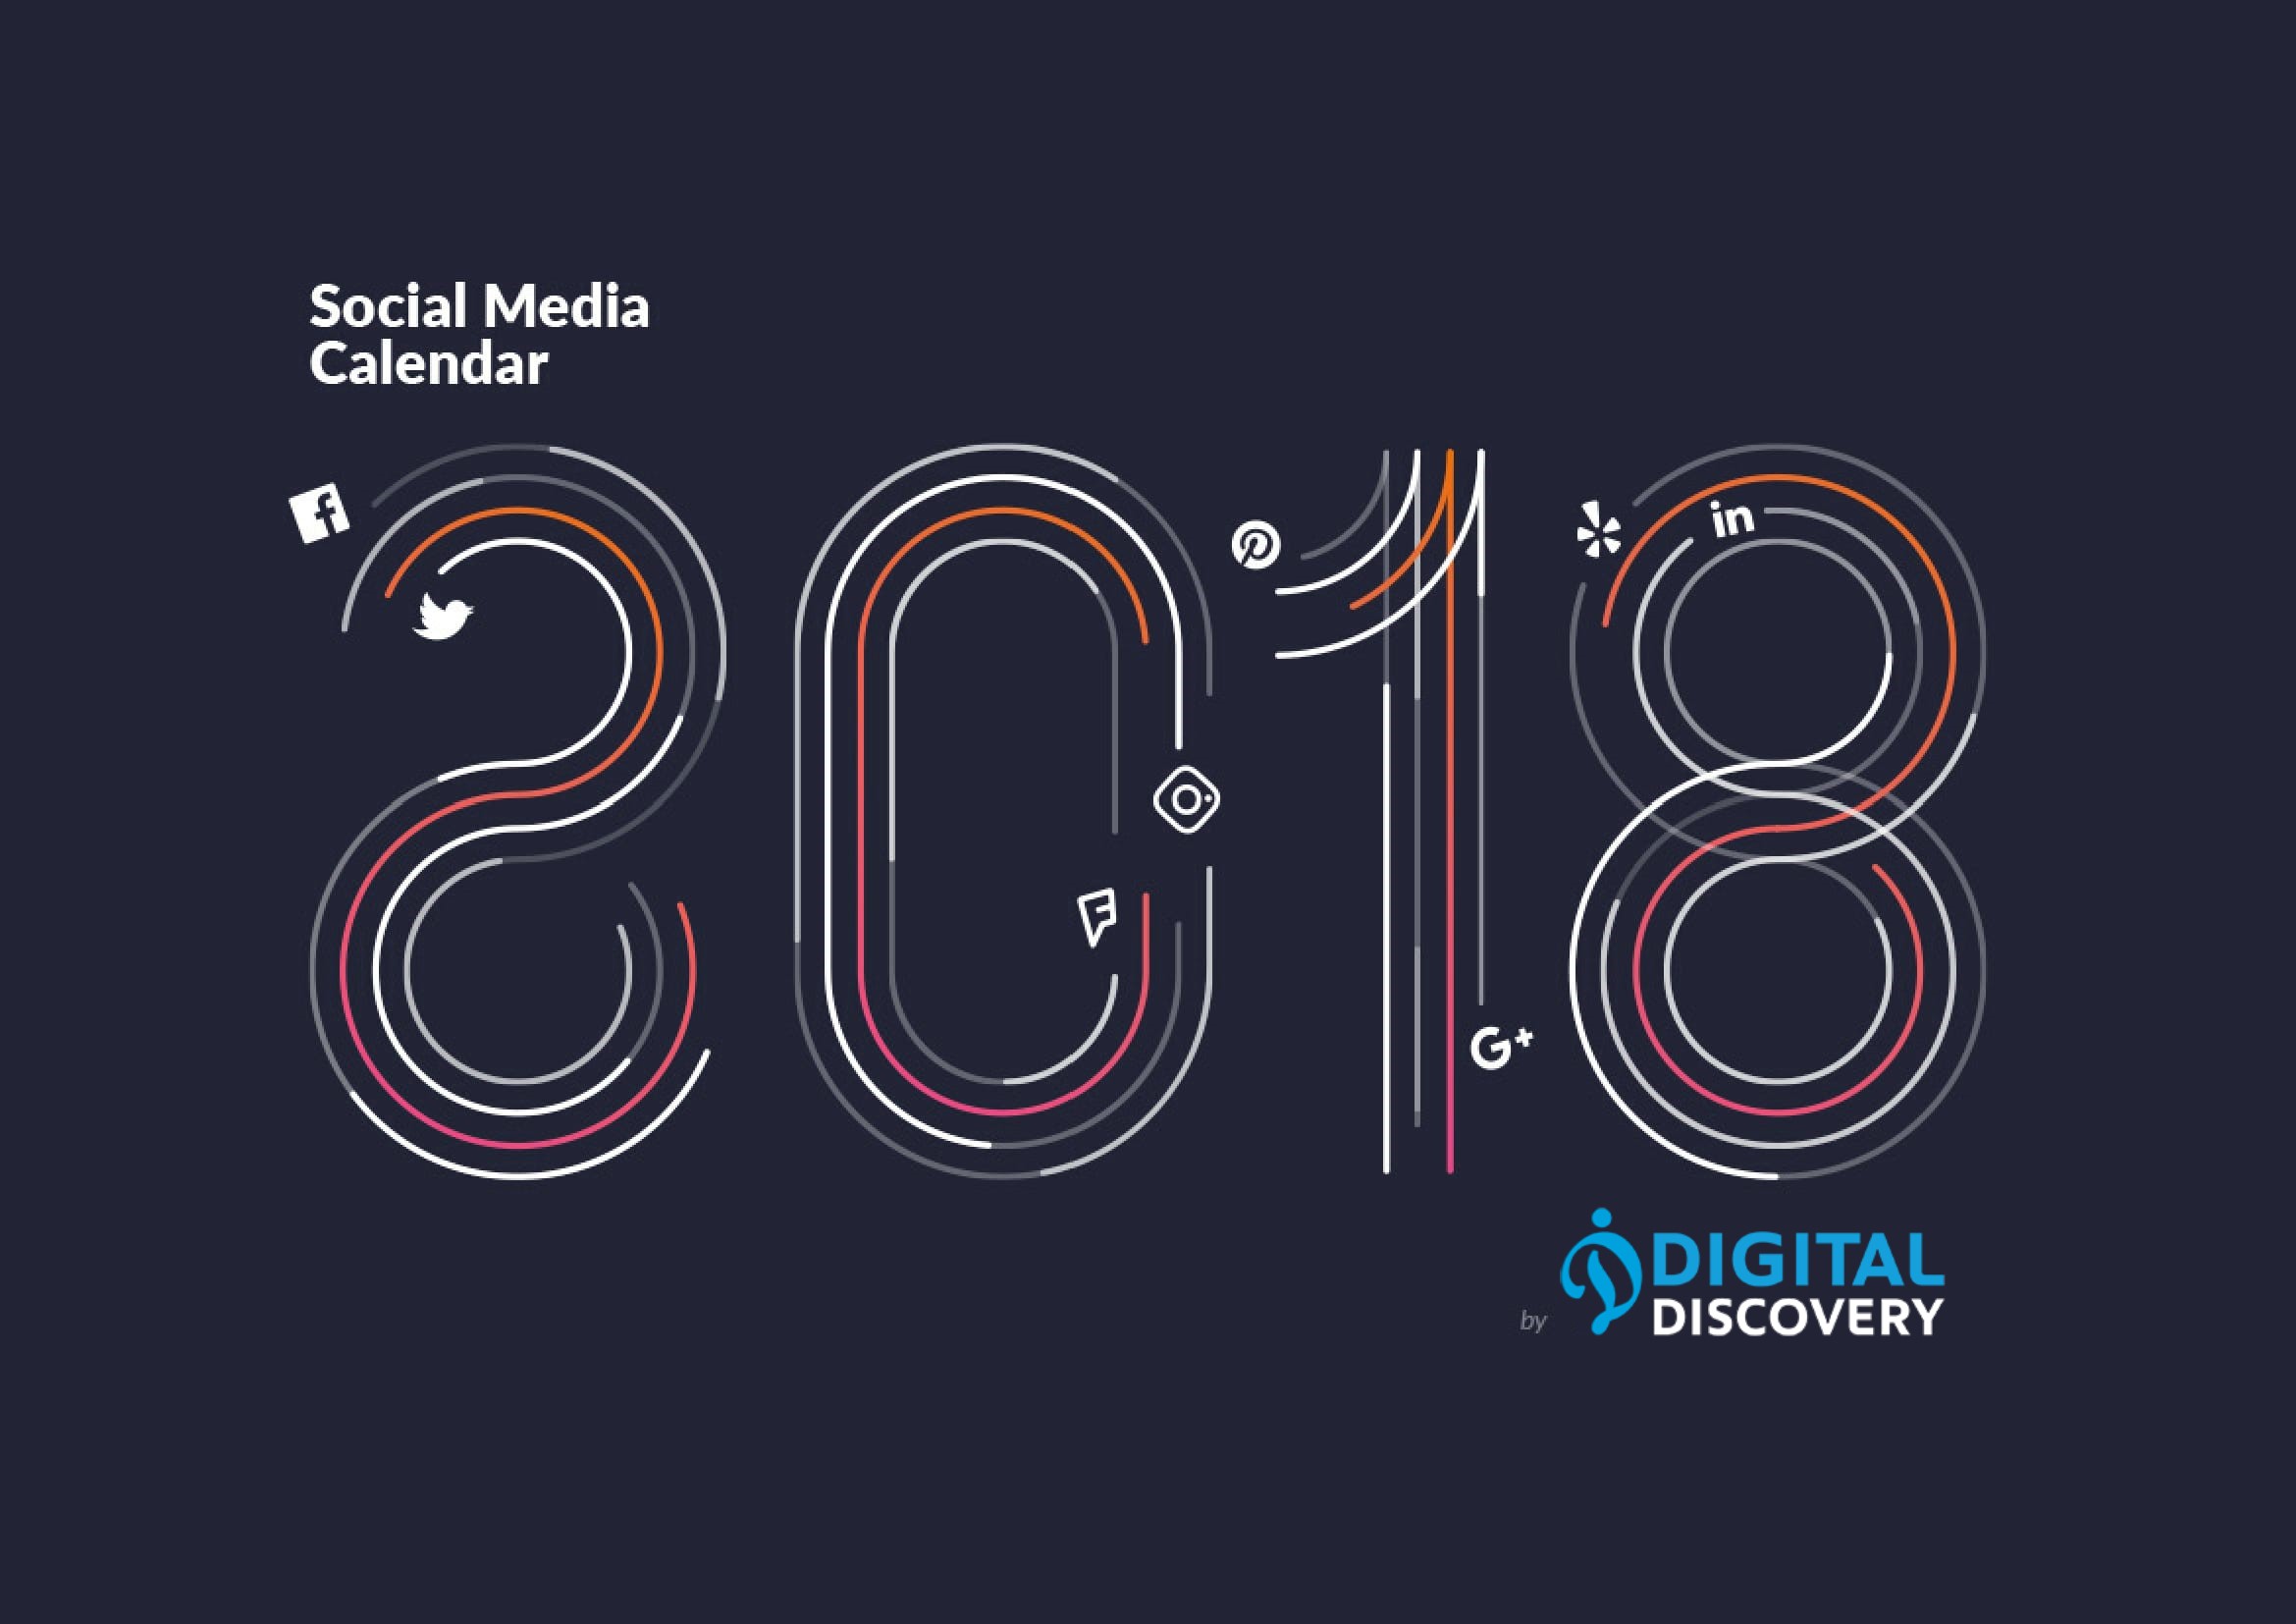  Your 2018 Social Media Calendar – Download it !